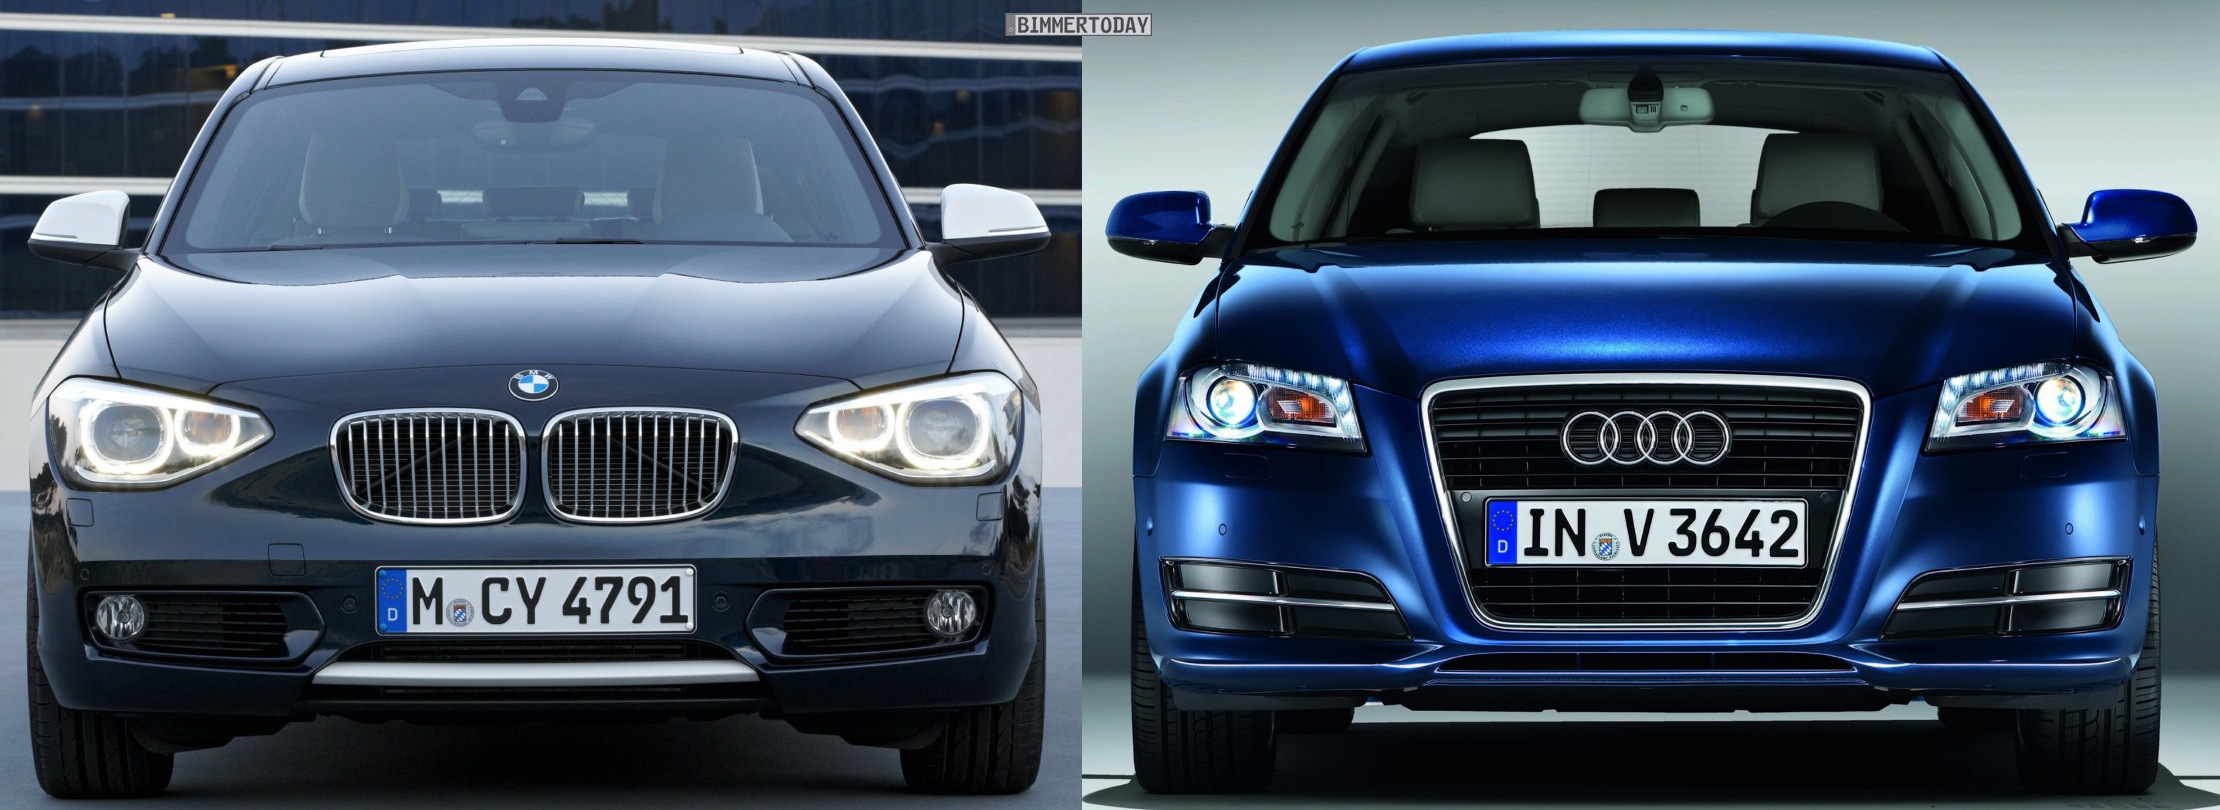 Audi a3 vs bmw 1 series reliability #5